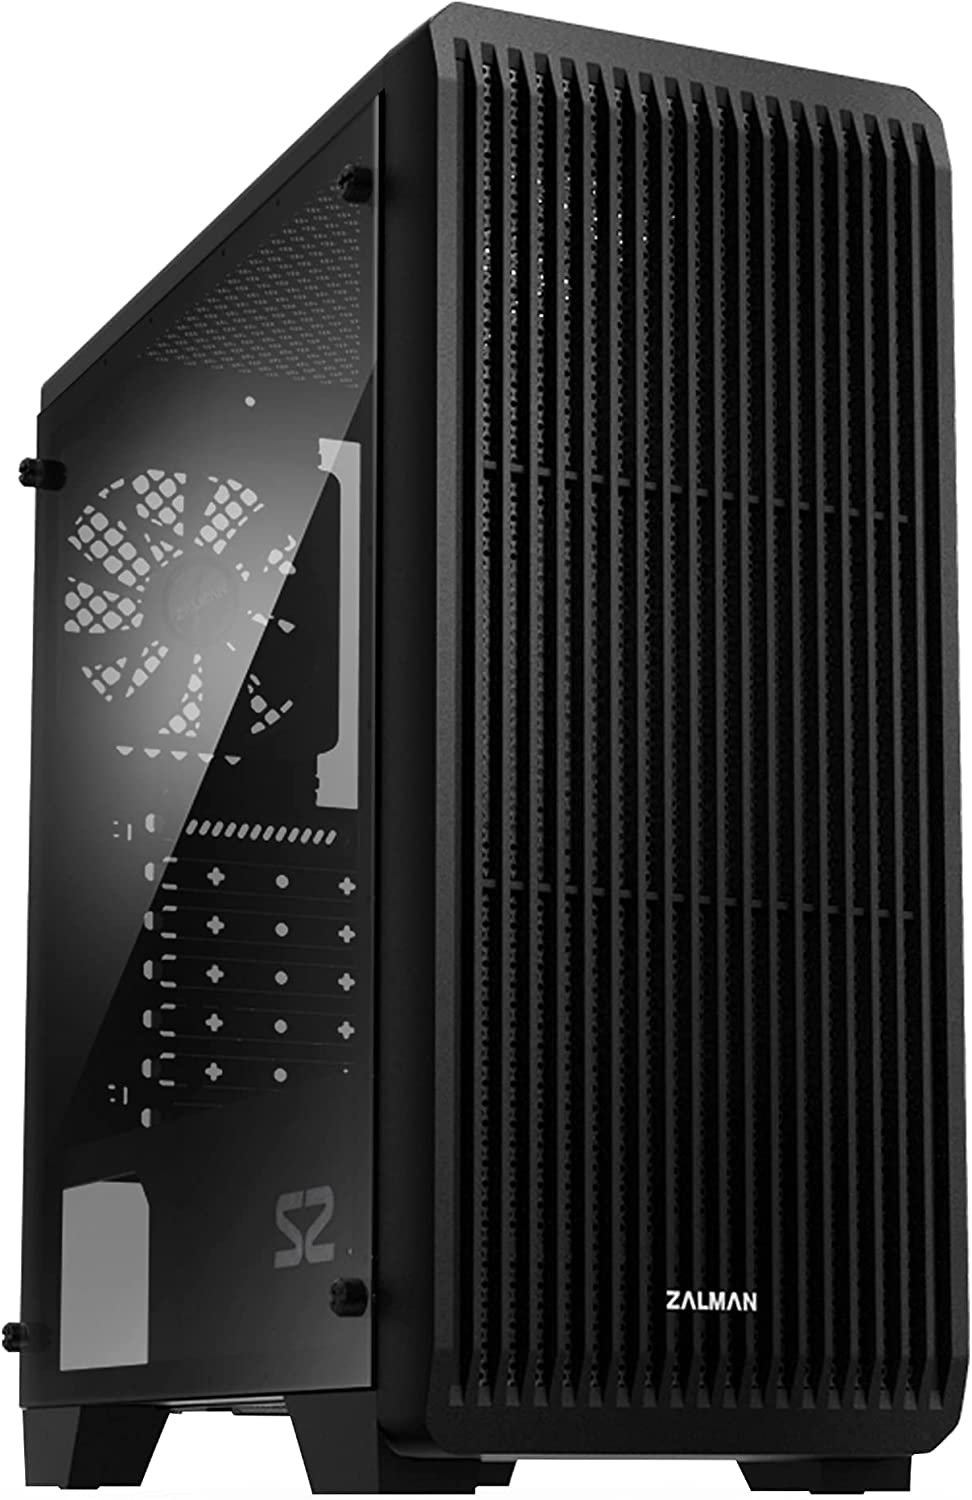 8 PC Case - Best $500 PC Build